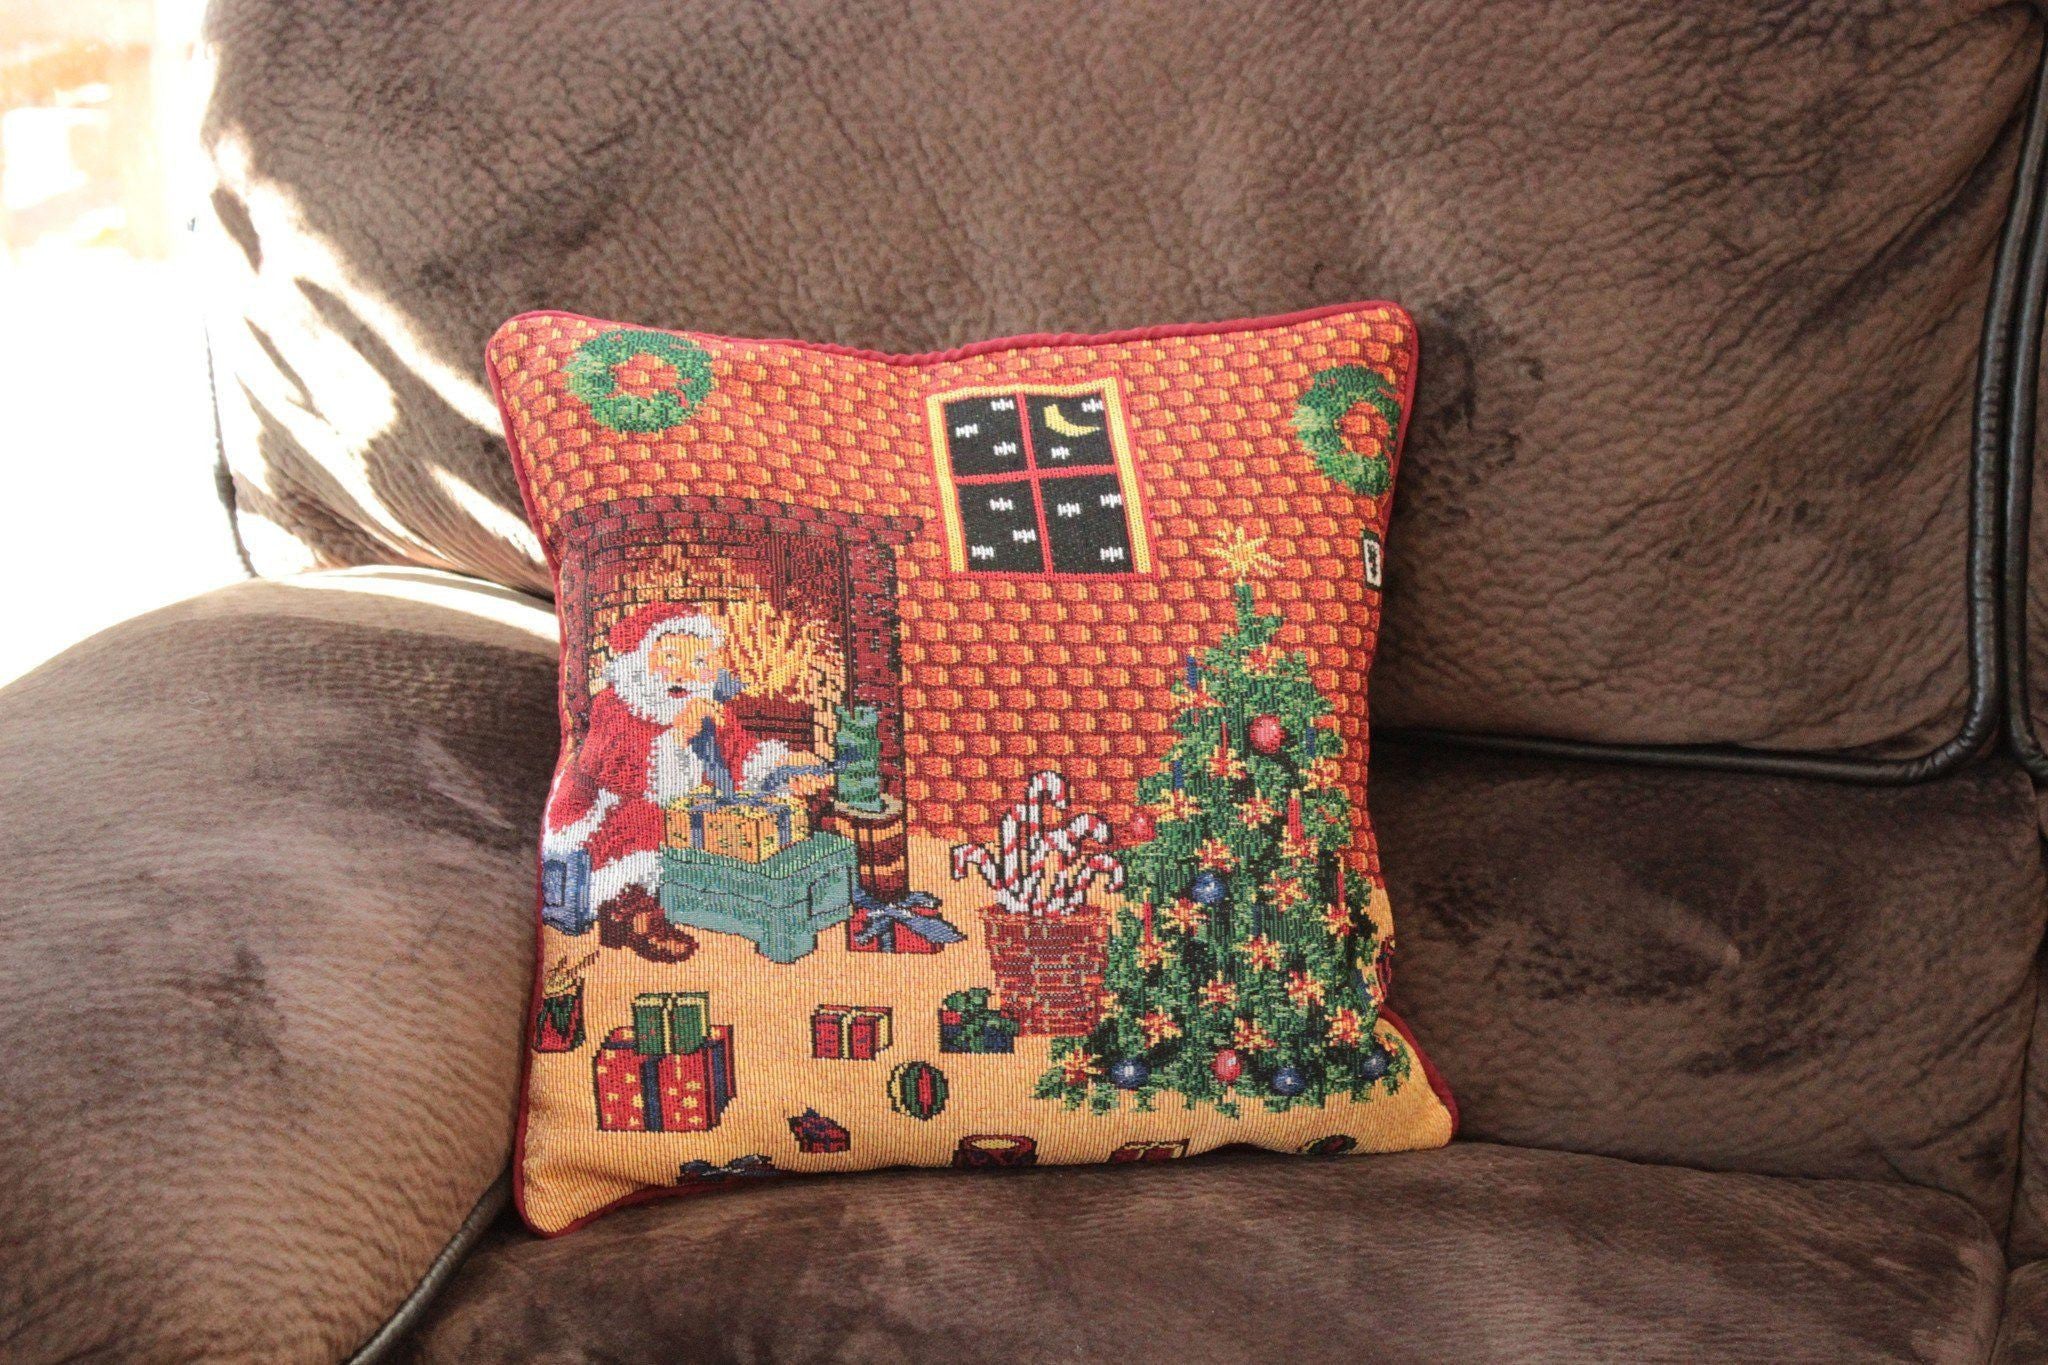 Tache Festive Santa's Last Minute Prep Retro Woven Tapestry Throw Pillow Cover (DB11869CC) - Tache Home Fashion